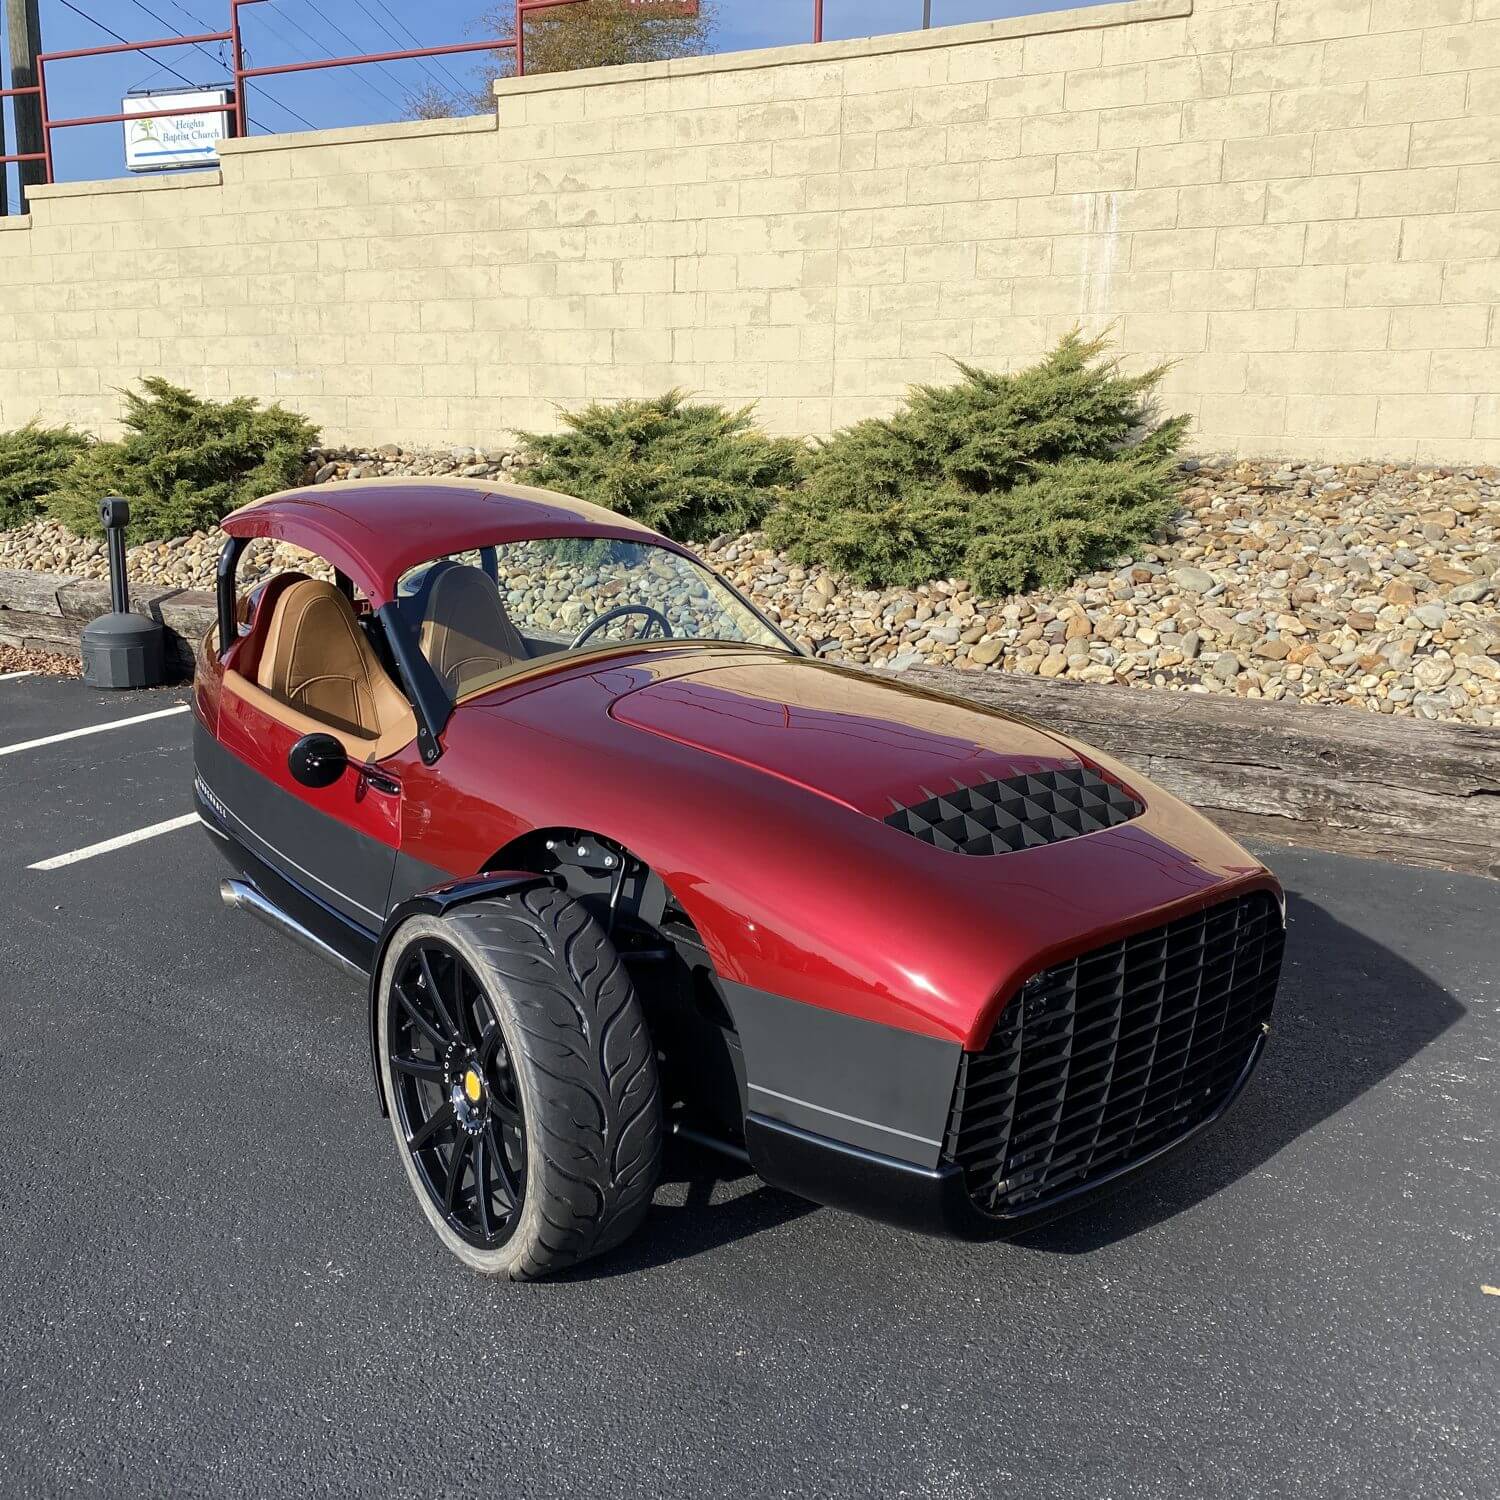 Red three wheel Vanderhall showcased in parking lot of rental agency